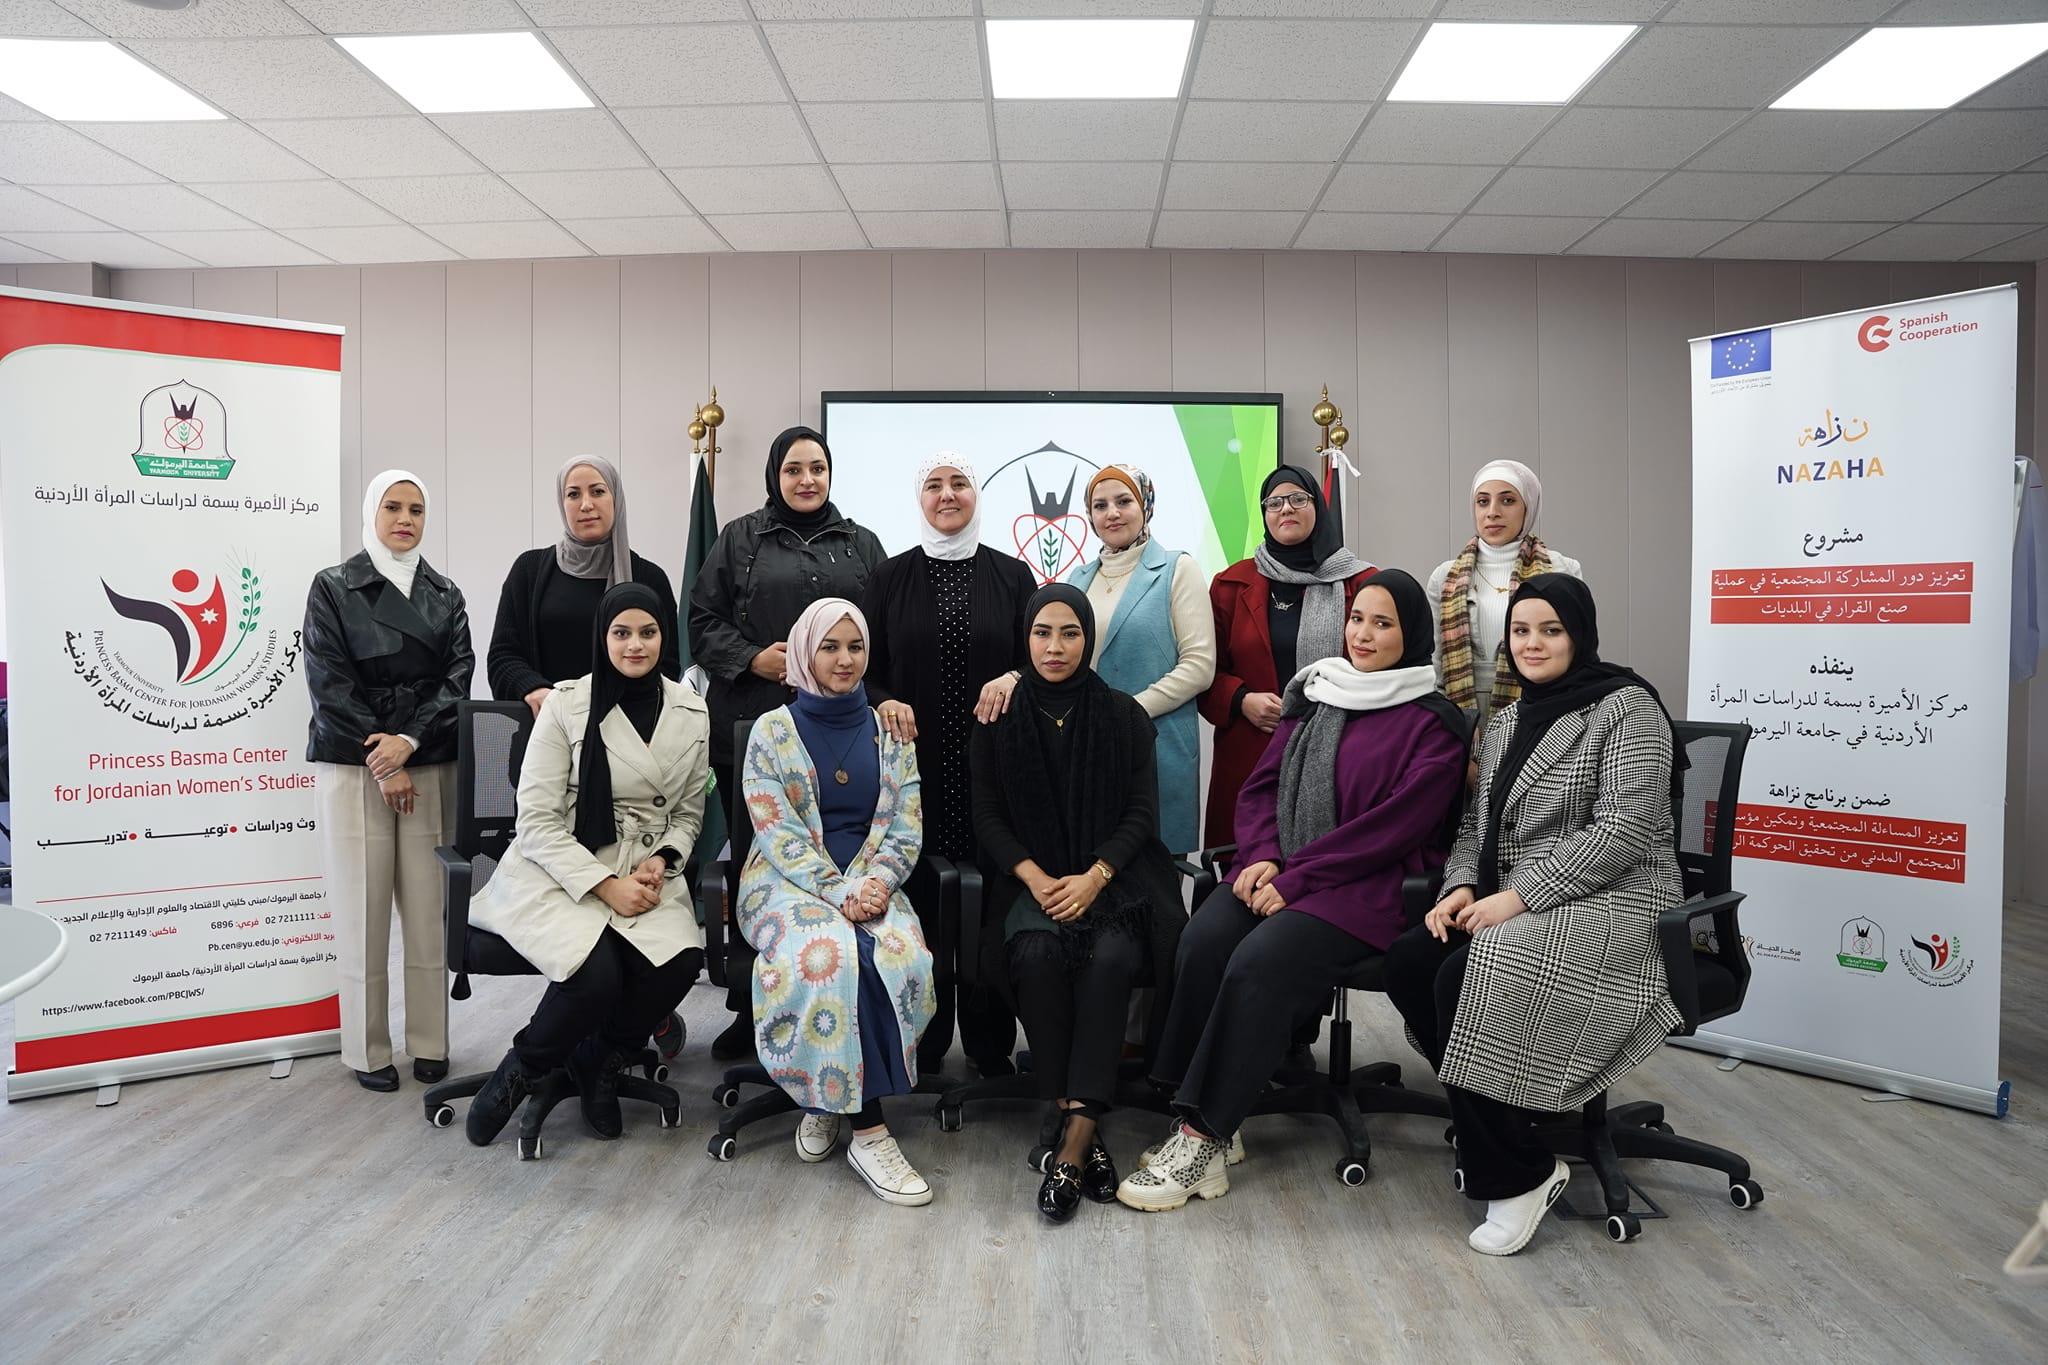 اليوم التدريبي الأول ينظمه مركز الأميرة بسمة لدراسات المرأة الأردنية في جامعة اليرموك  لمجموعة من الباحثين الميدانيين المتطوعين مع المركز ضمن مشروع تعزيز المشاركة المجتمعية في البلديات